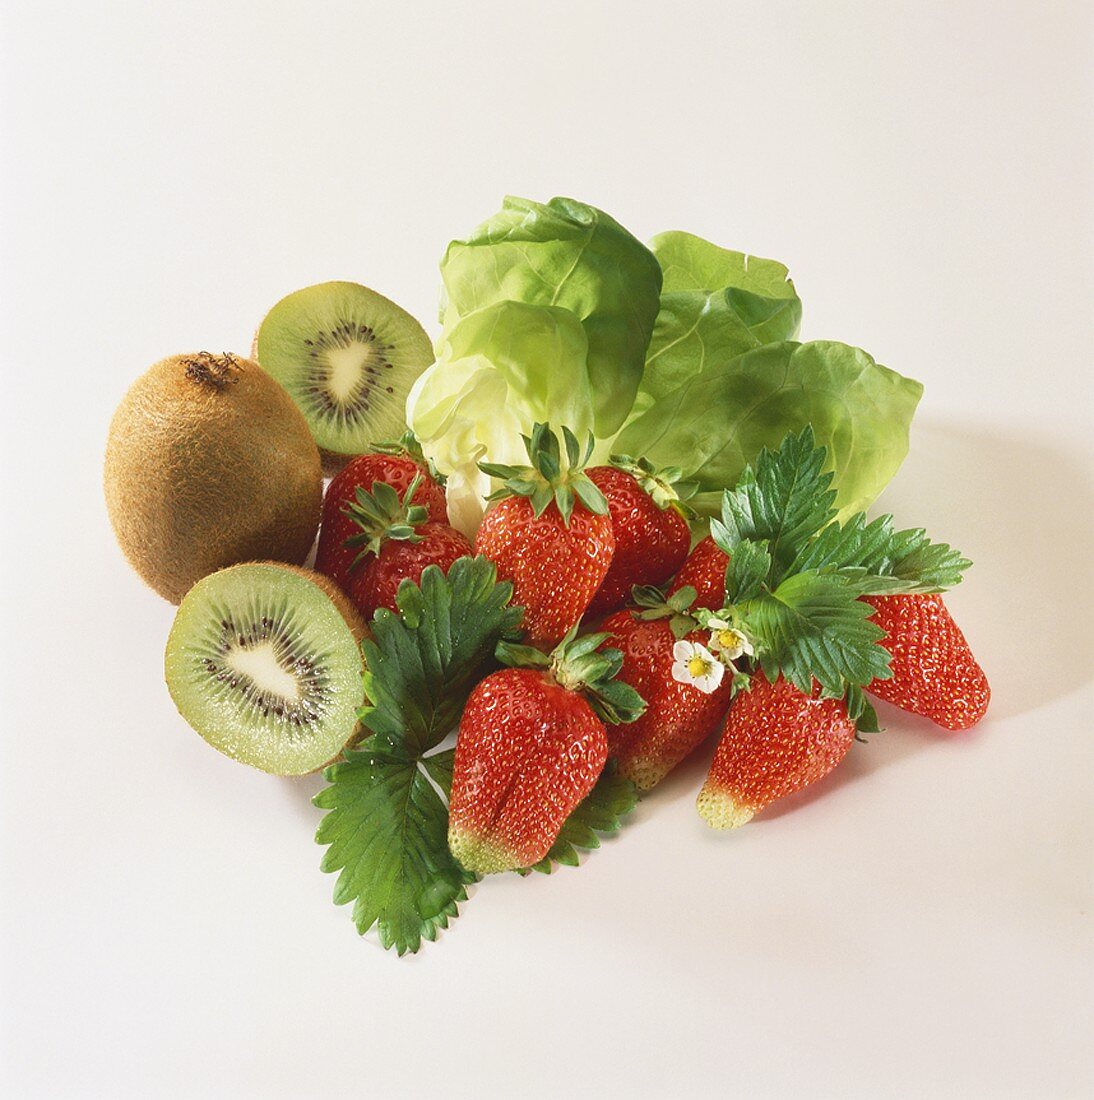 Frische Erdbeeren, Kiwis und Salatblätter